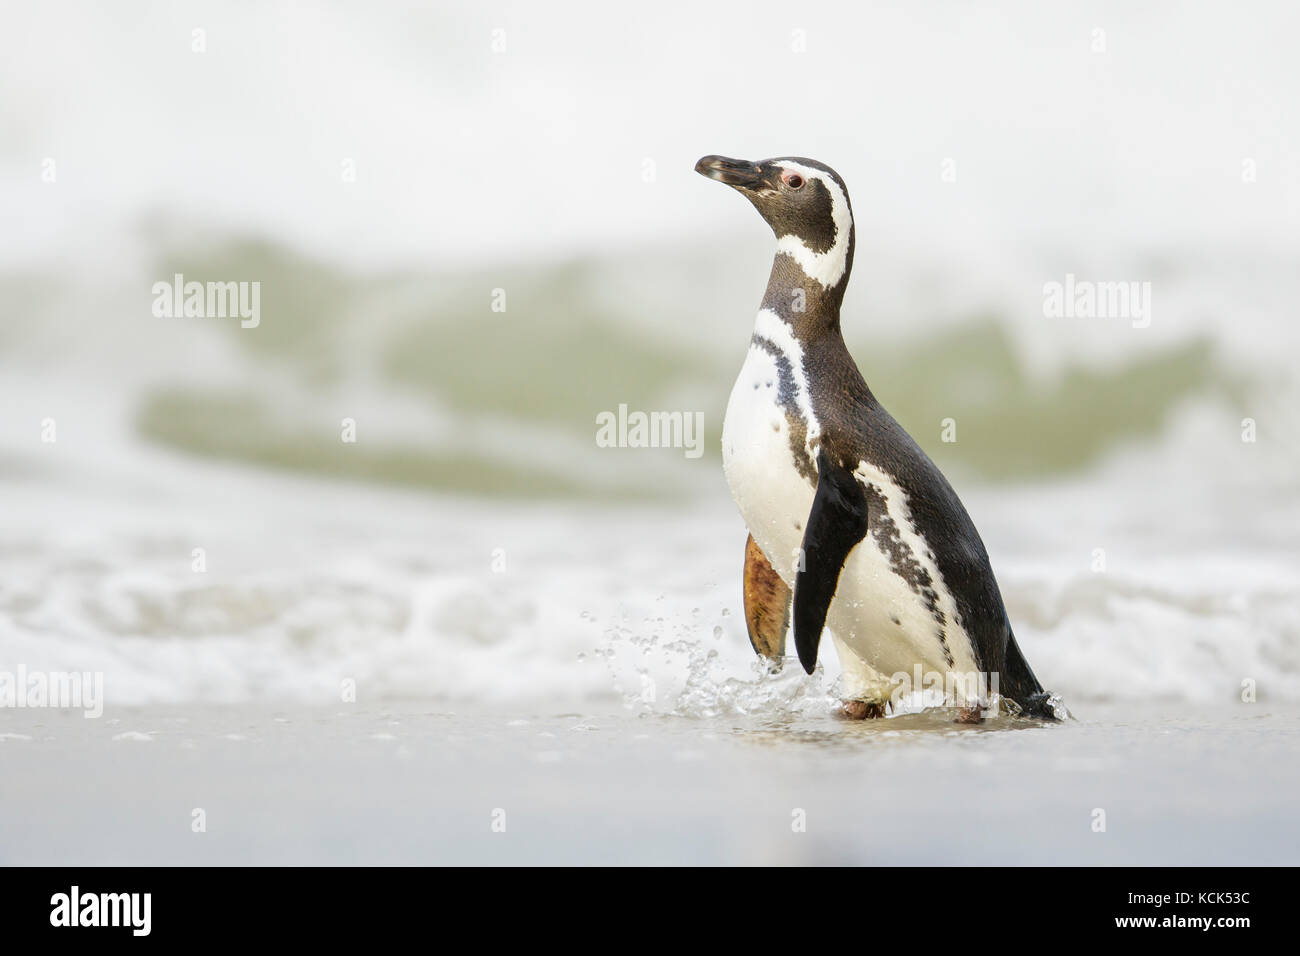 Magellanic Penguin (Spheniscus magellanicus) on a beach in the Falkland Islands. Stock Photo